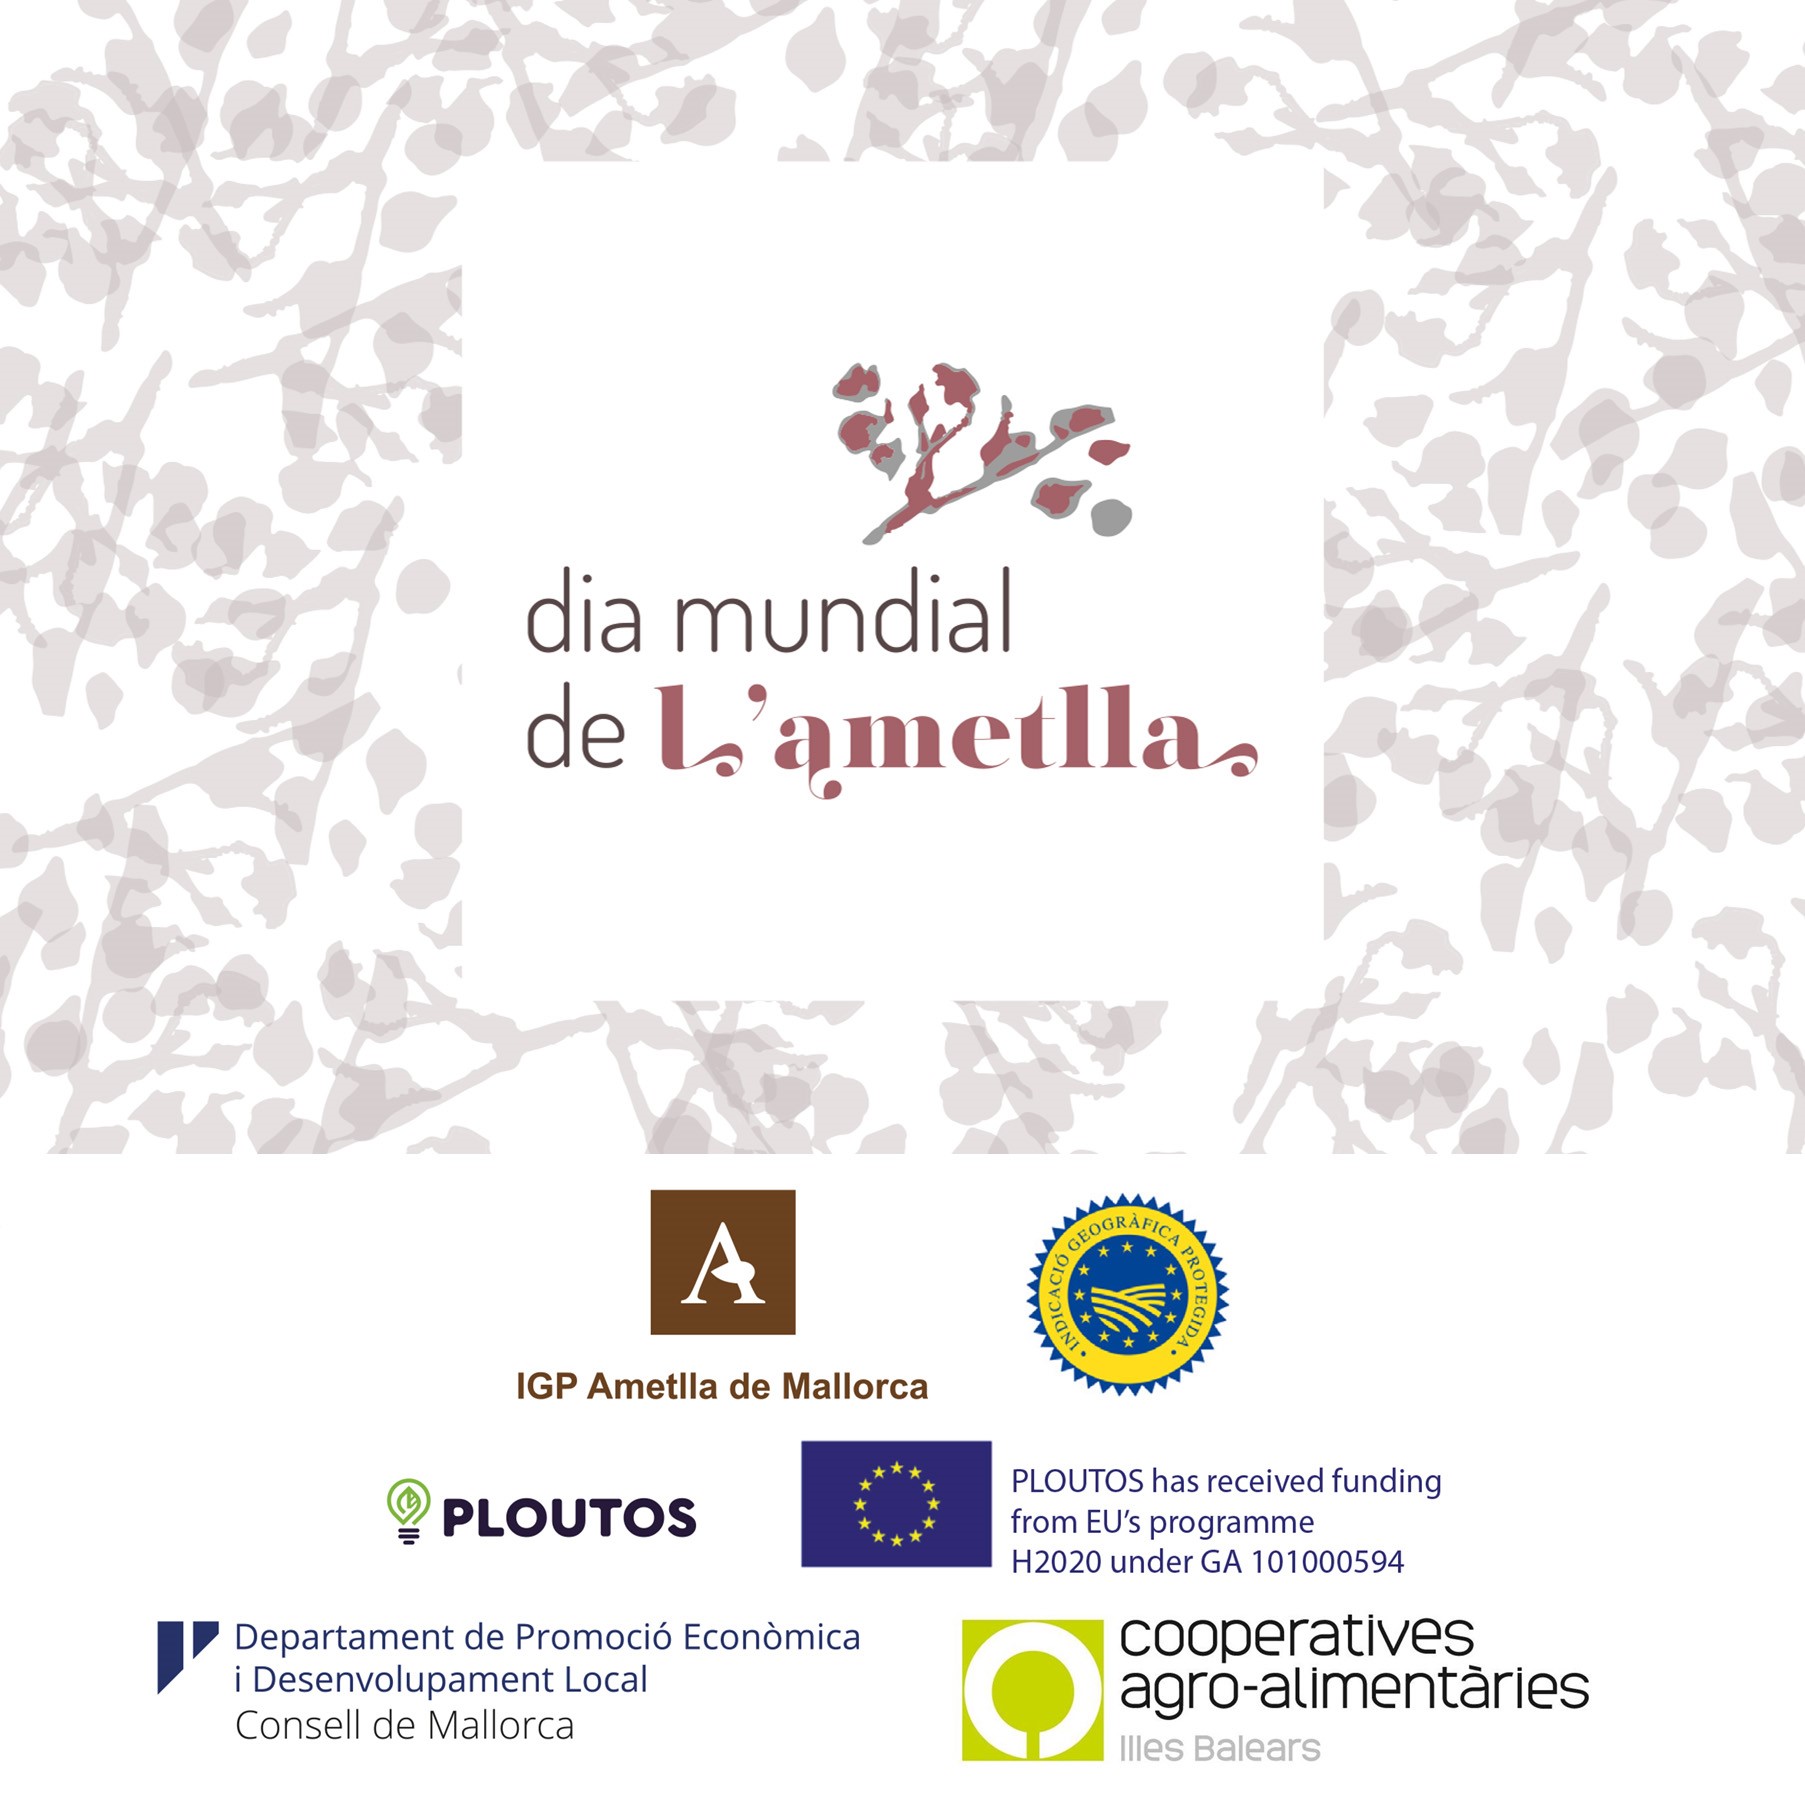 La IGP Ametlla de Mallorca celebra el Dia Mundial de l’Ametlla - Notícies - Illes Balears - Productes agroalimentaris, denominacions d'origen i gastronomia balear